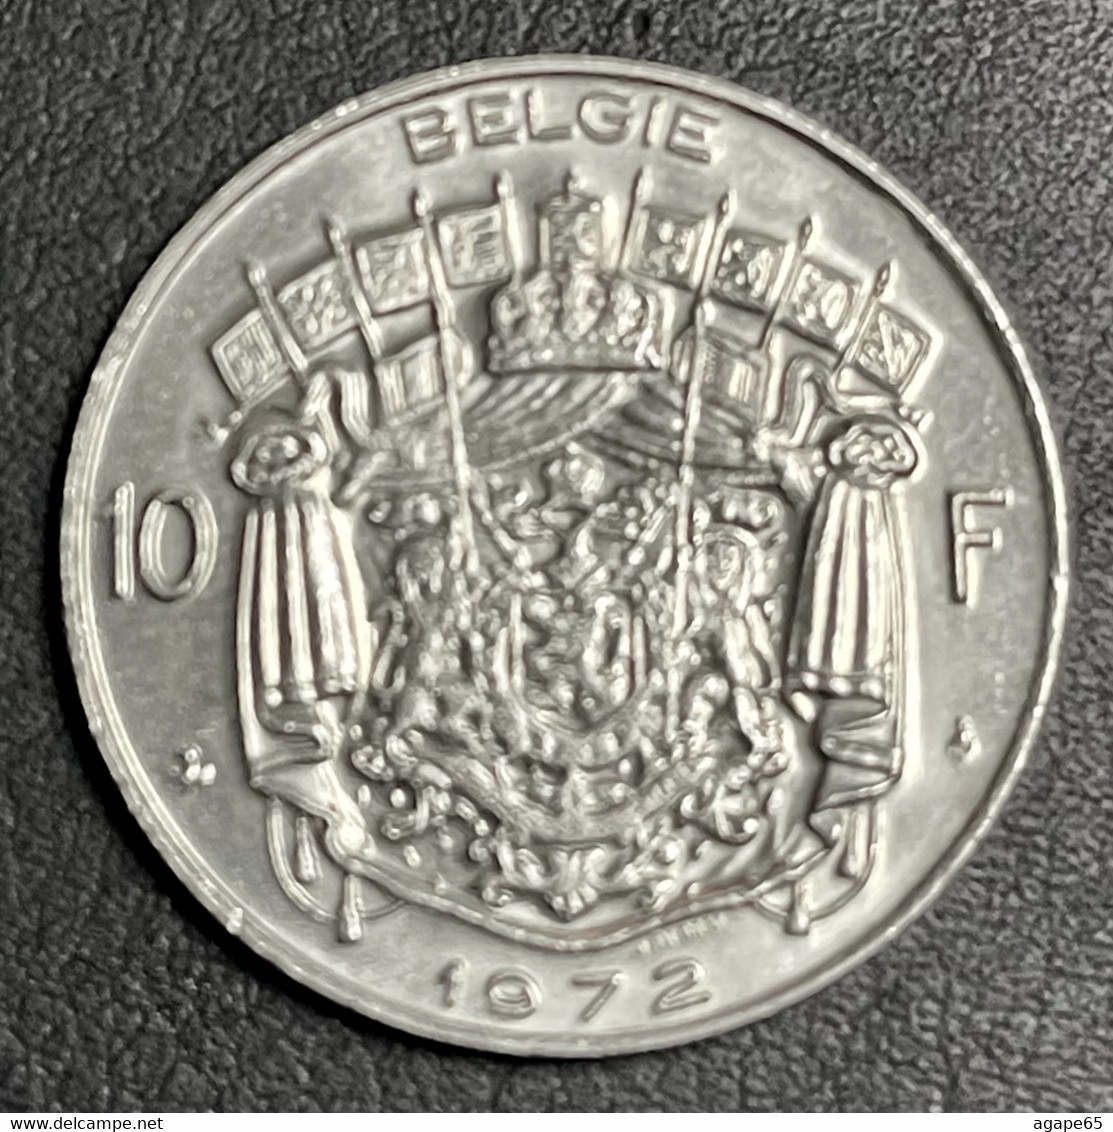 1972 Belgium 10 Francs (dutch Text) - 10 Frank